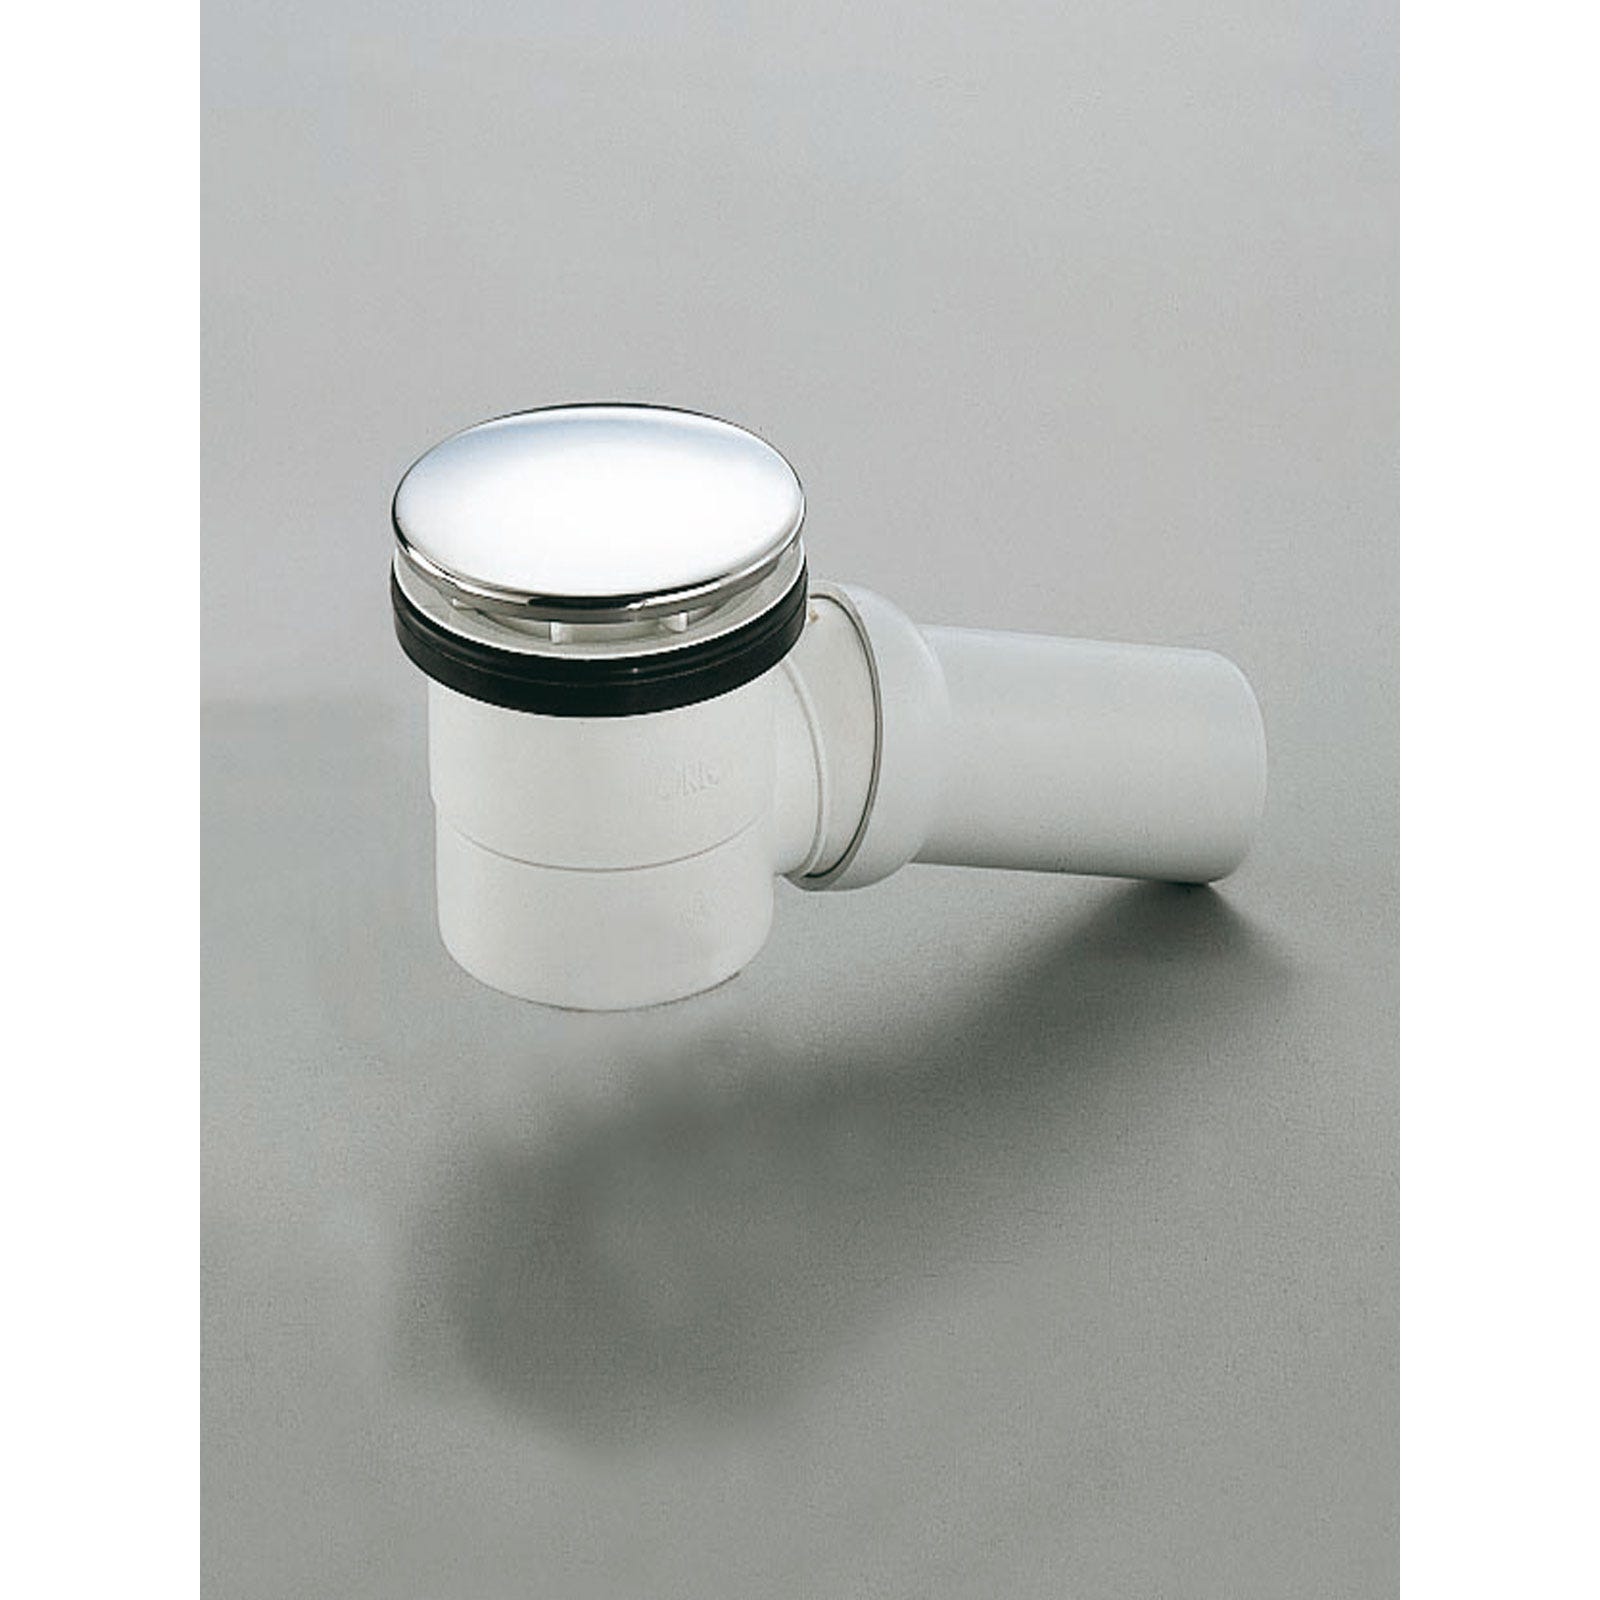 Schulte receveur de douche acrylique, 100 x 80 x 3,5 cm, effet blanc, rectangulaire, extra plat à poser ou à encastrer, avec pieds, bac à douche 2